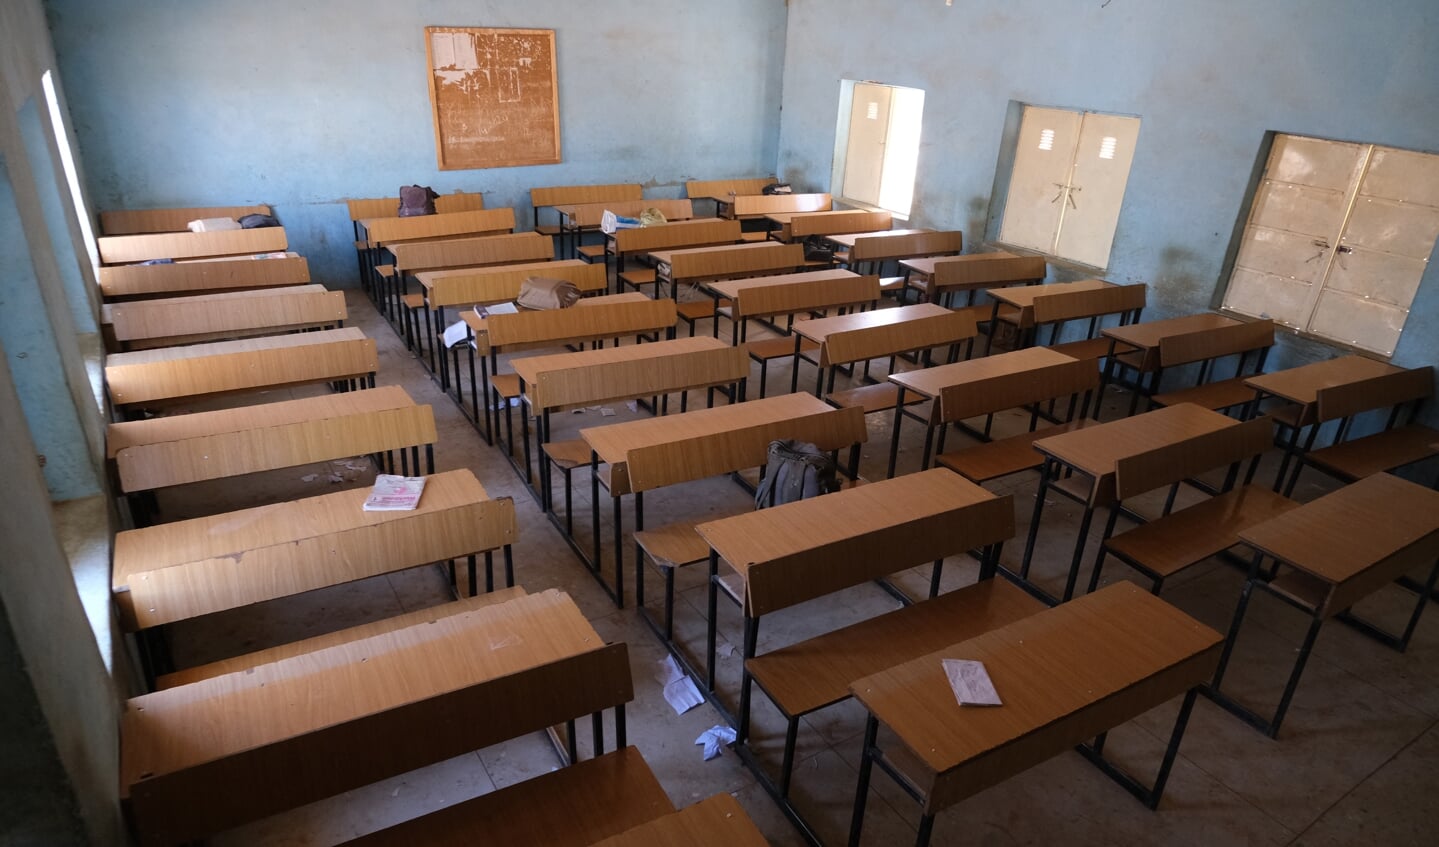 Een leeg klaslokaal in de school die dit weekend werd overvallen. Als reactie heeft de regering alle overheidsscholen gesloten in de provincie Katsina. 